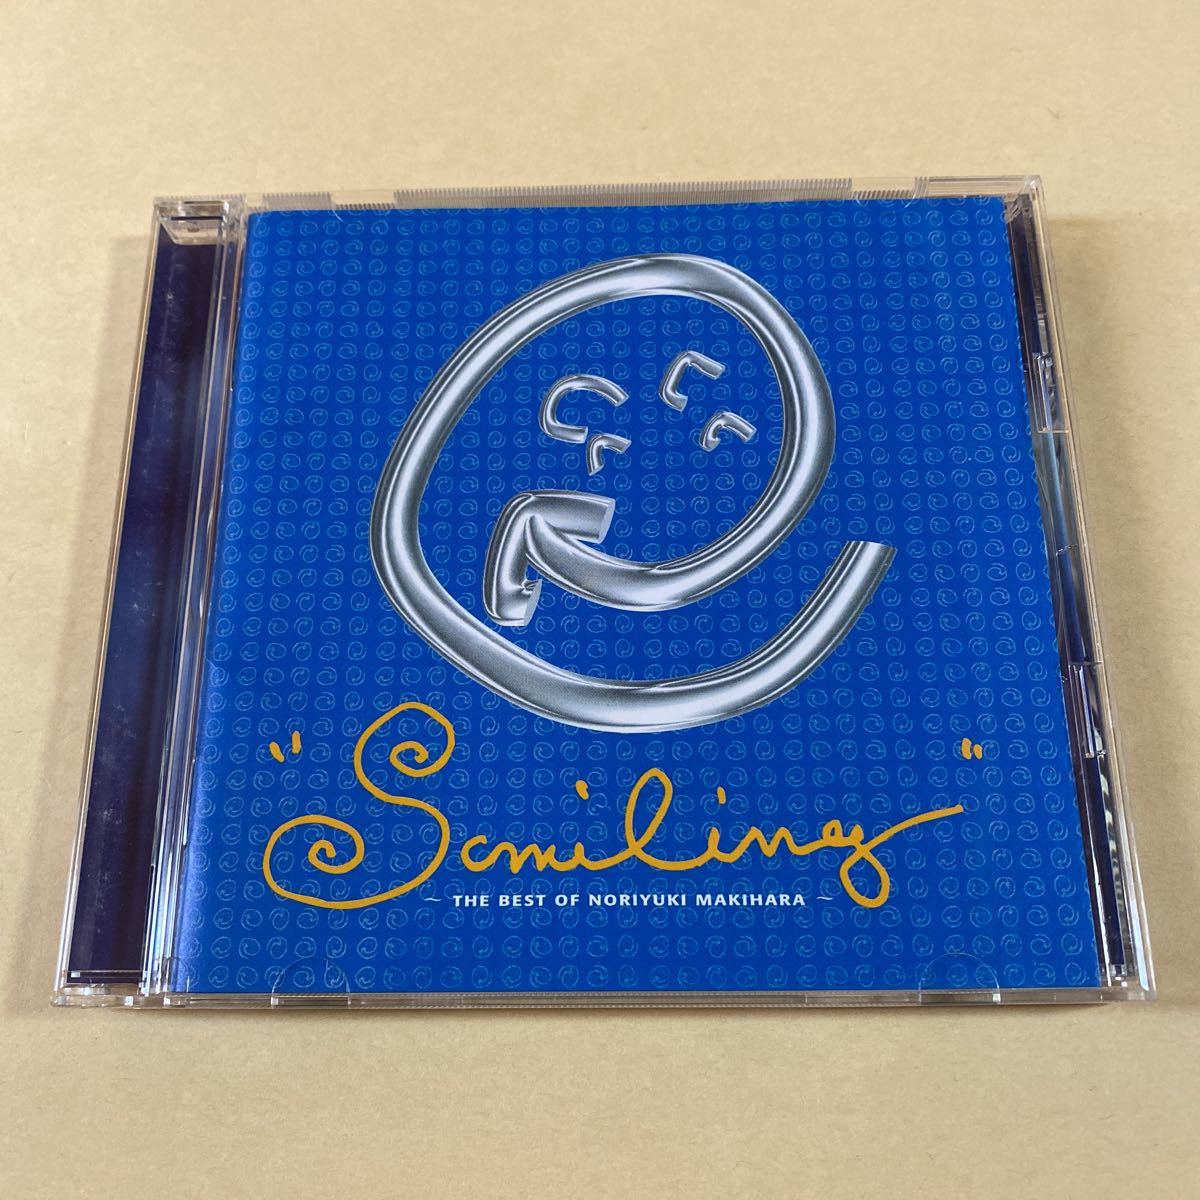 槇原敬之 1CD「Smiling-THE BEST OF Noriyuki Makihara」_画像3